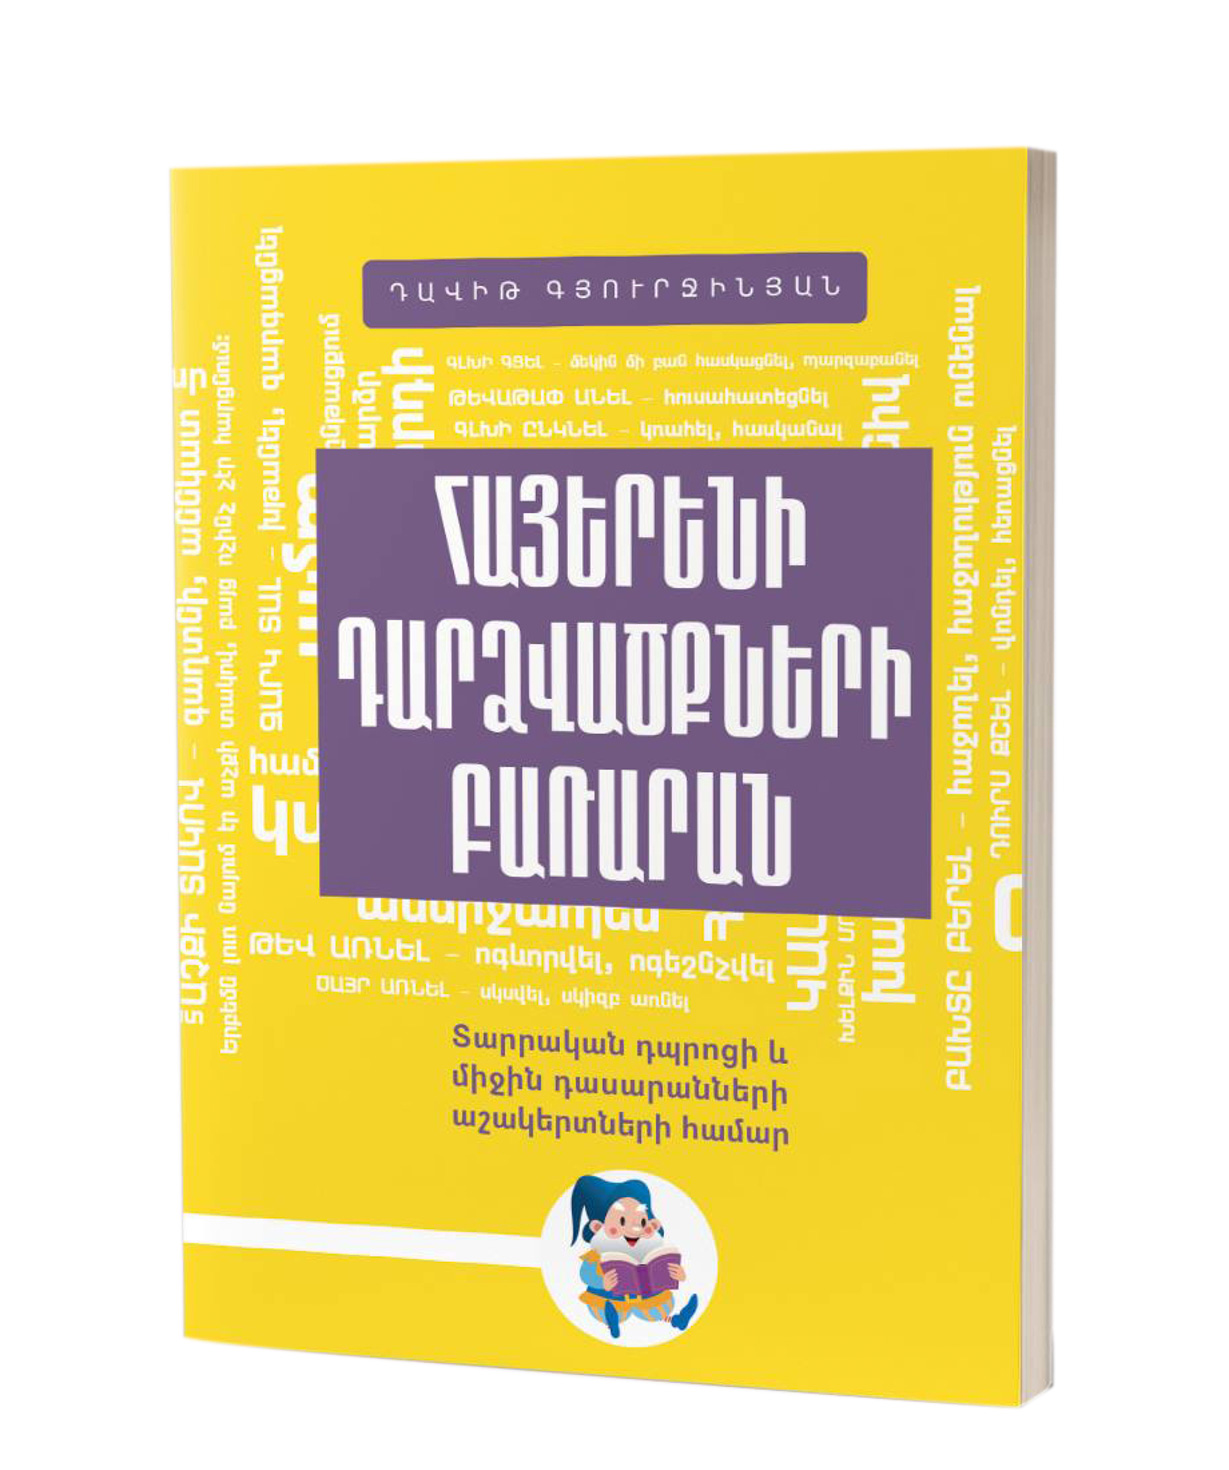 Գիրք «Հայերենի Դարձվածքների Բառարան» Դավիթ Գյուրջինյան / հայերեն